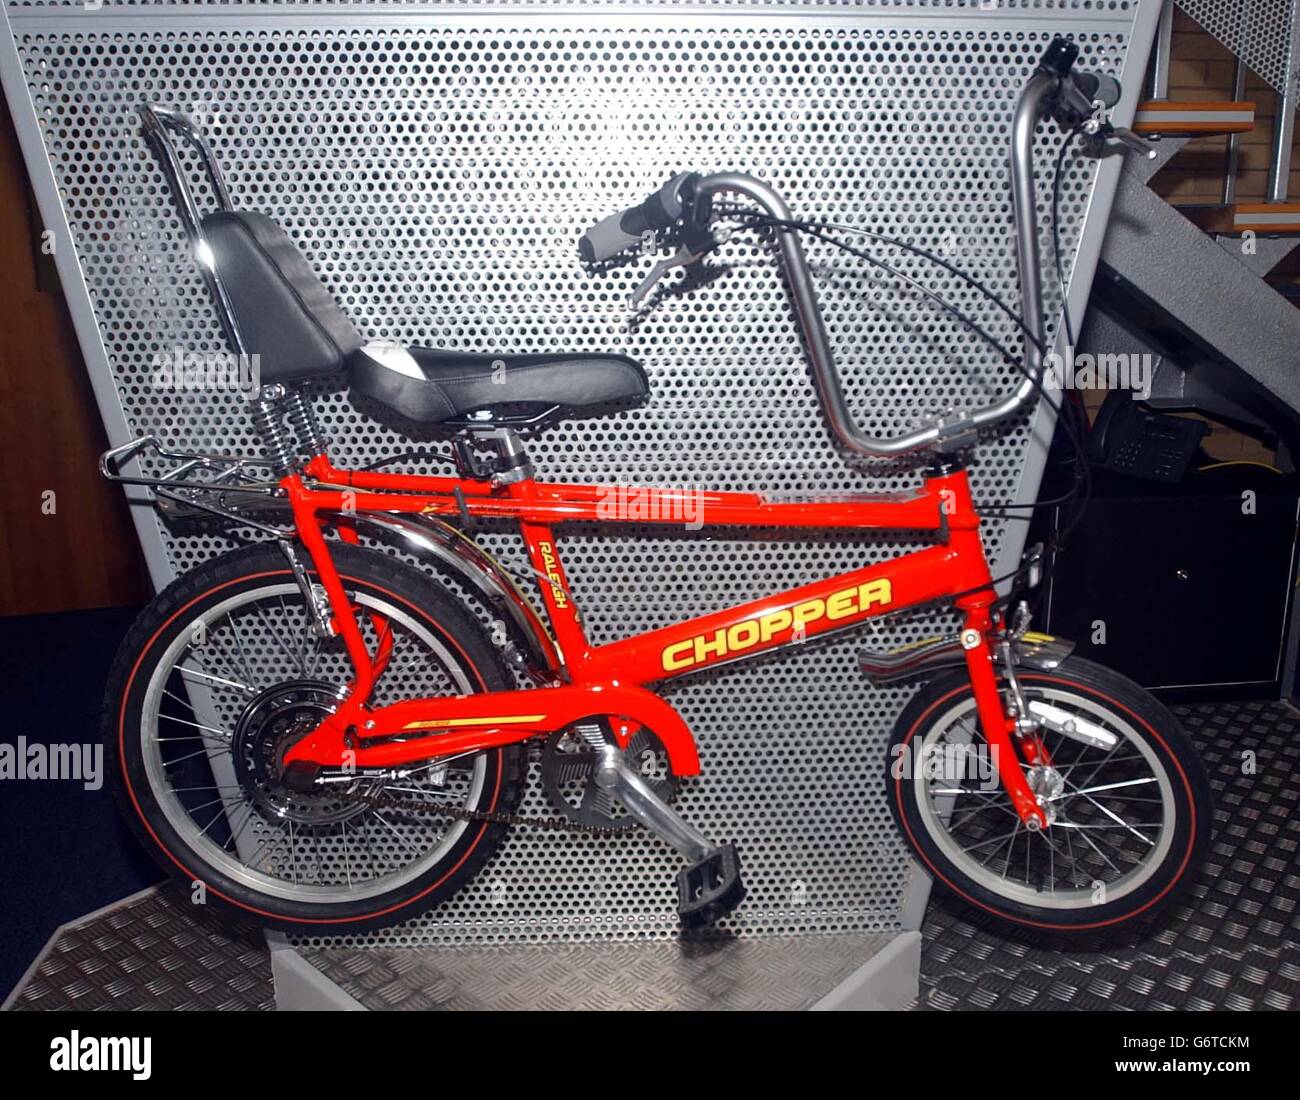 The new MK 3 Chopper bike Stock Photo